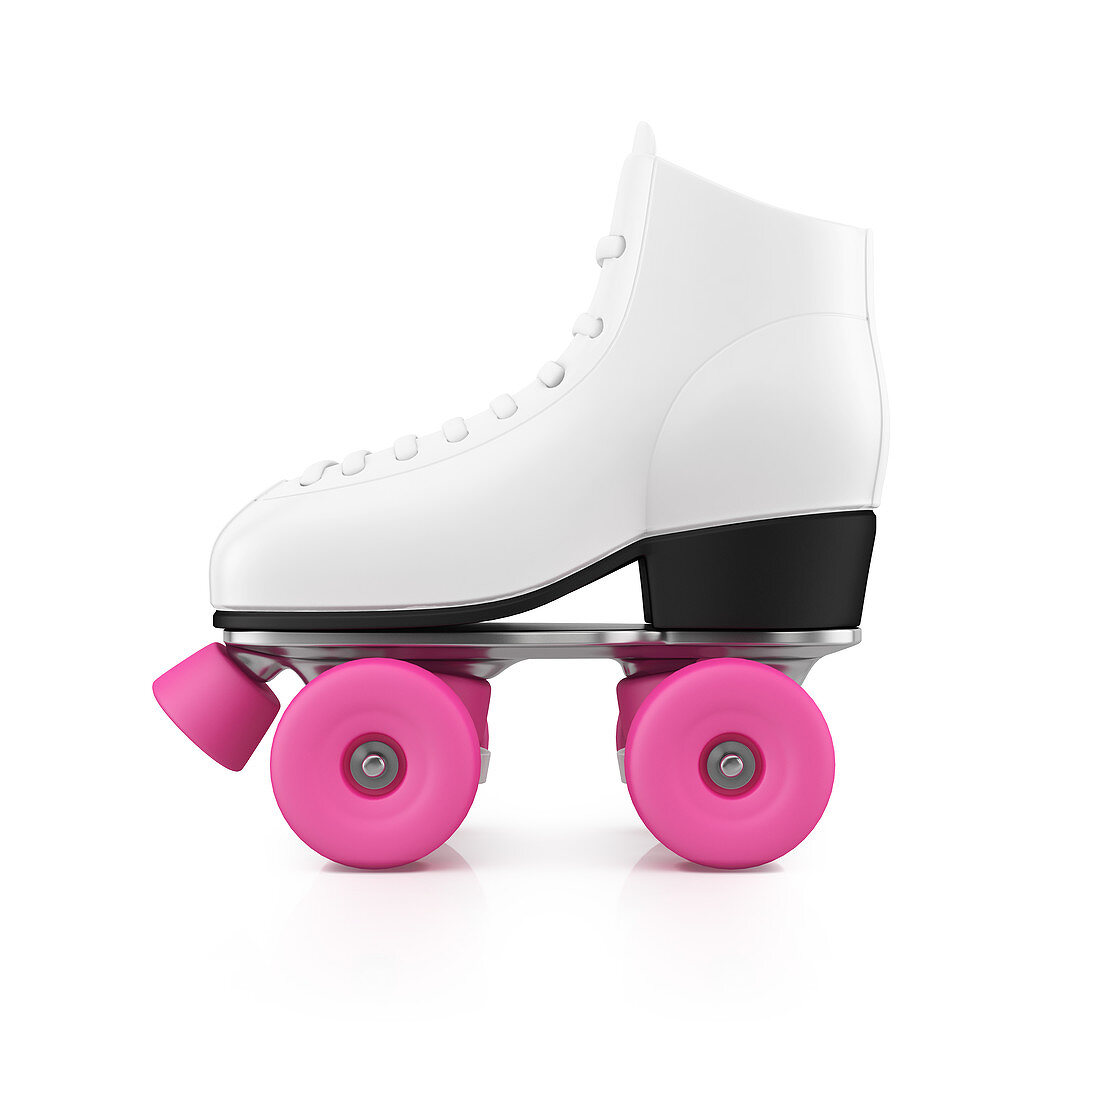 Roller skate, illustration